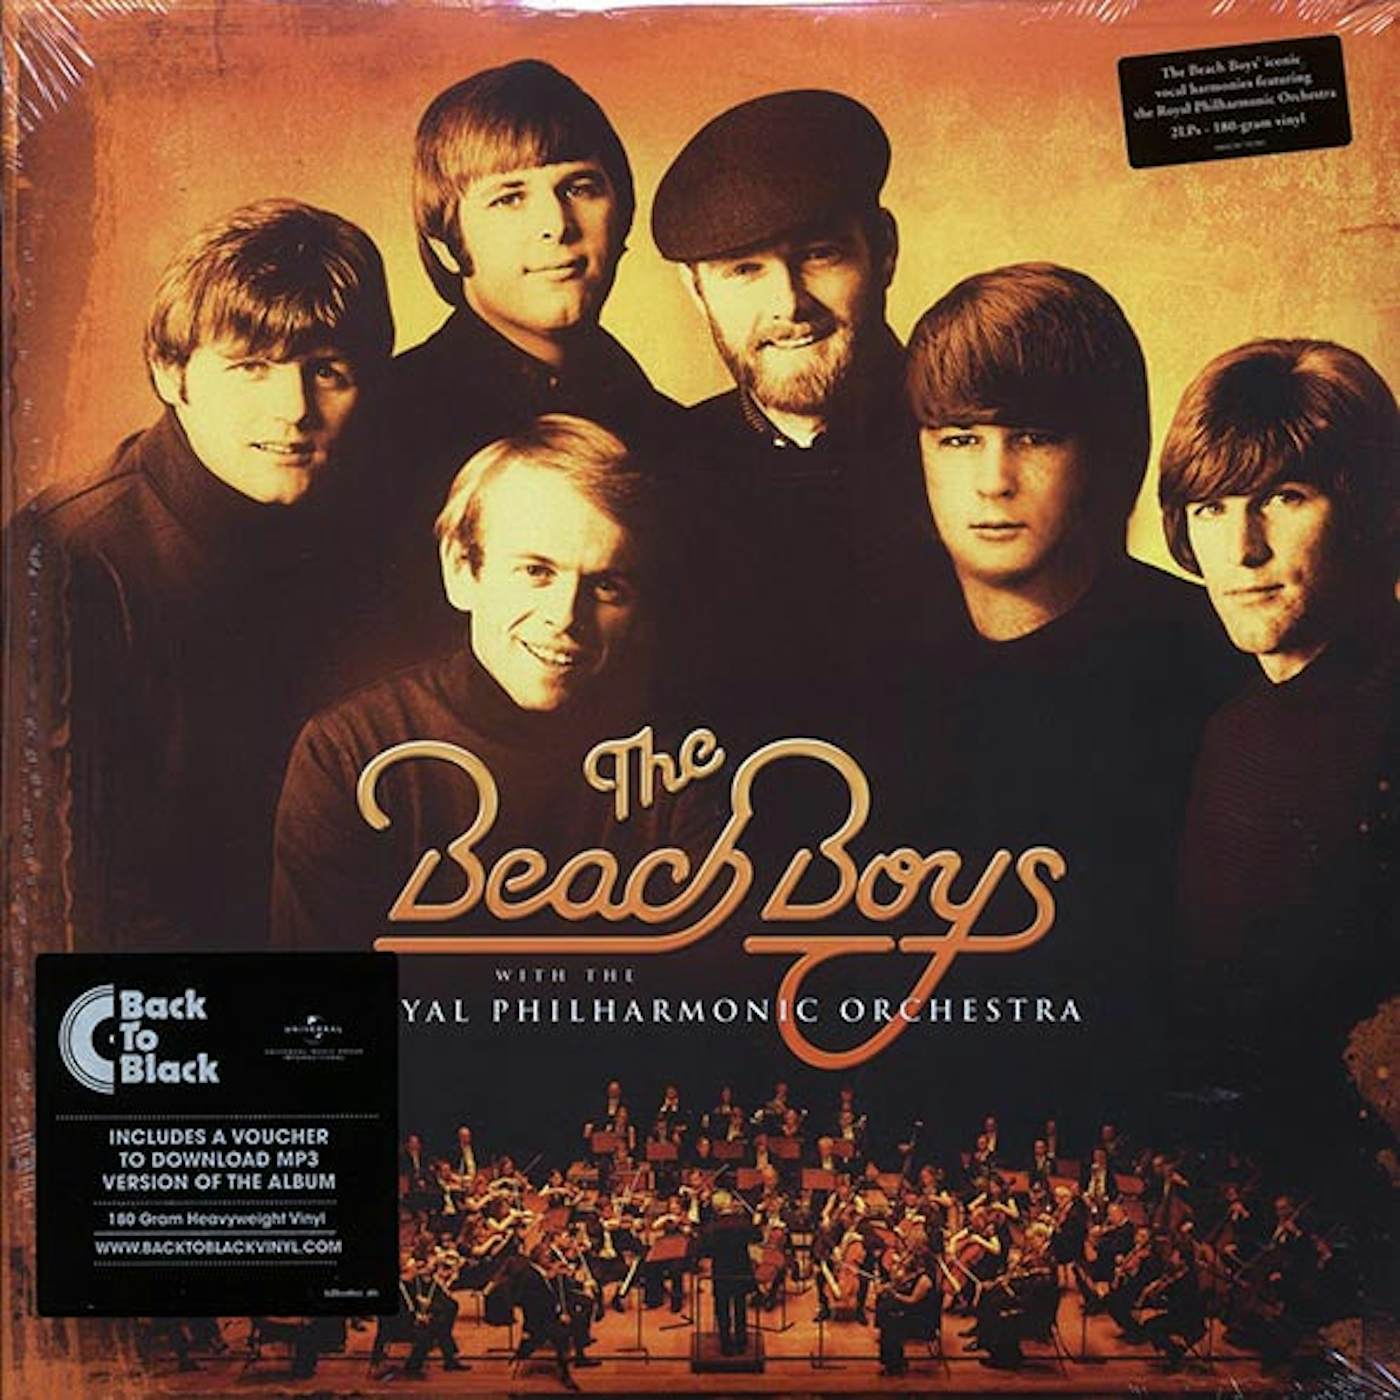  The Beach Boys, The Royal Philharmonic Orchestra  LP -  The Beach Boys With The Royal Philharmonic Orchestra (2xLP) (180g) (Vinyl)